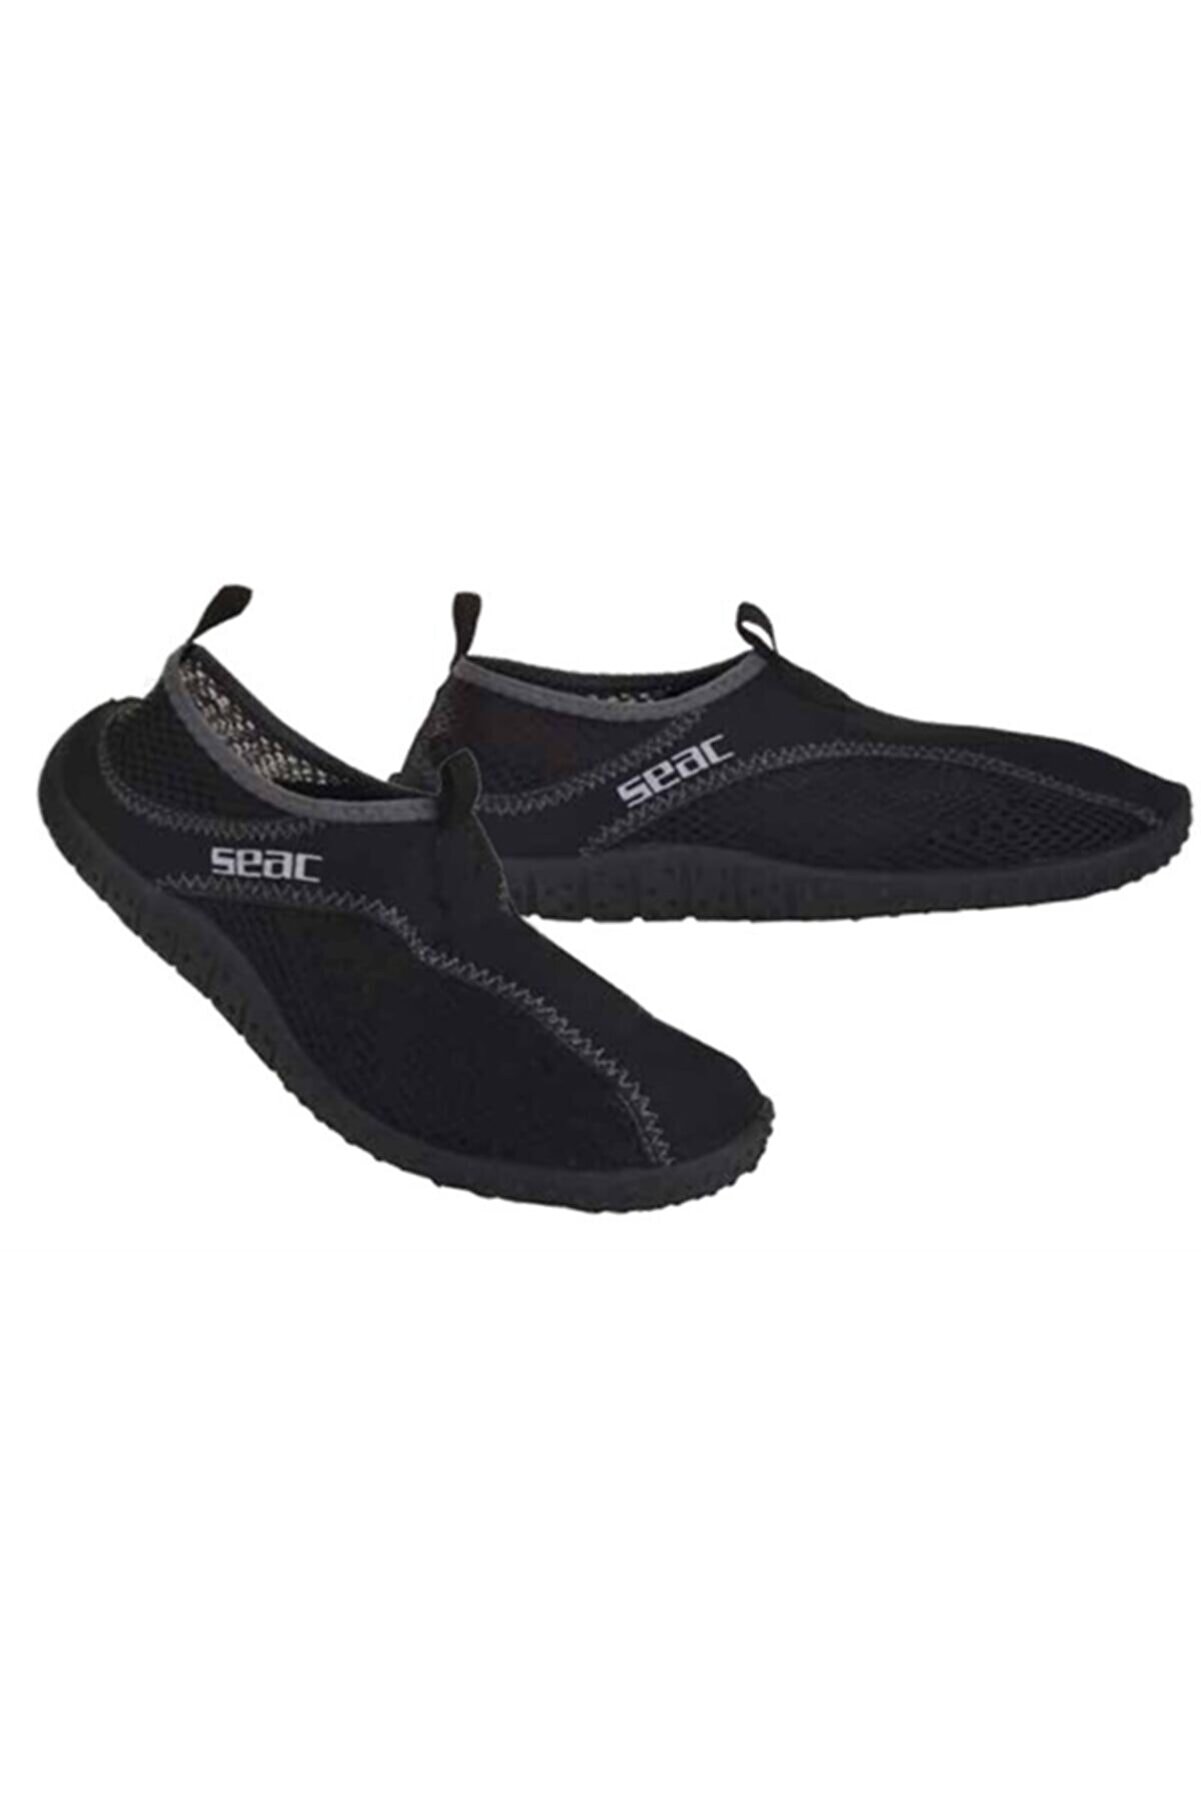 Seac Sub Unisex Siyah Plaj Ayakkabısı Raınbow